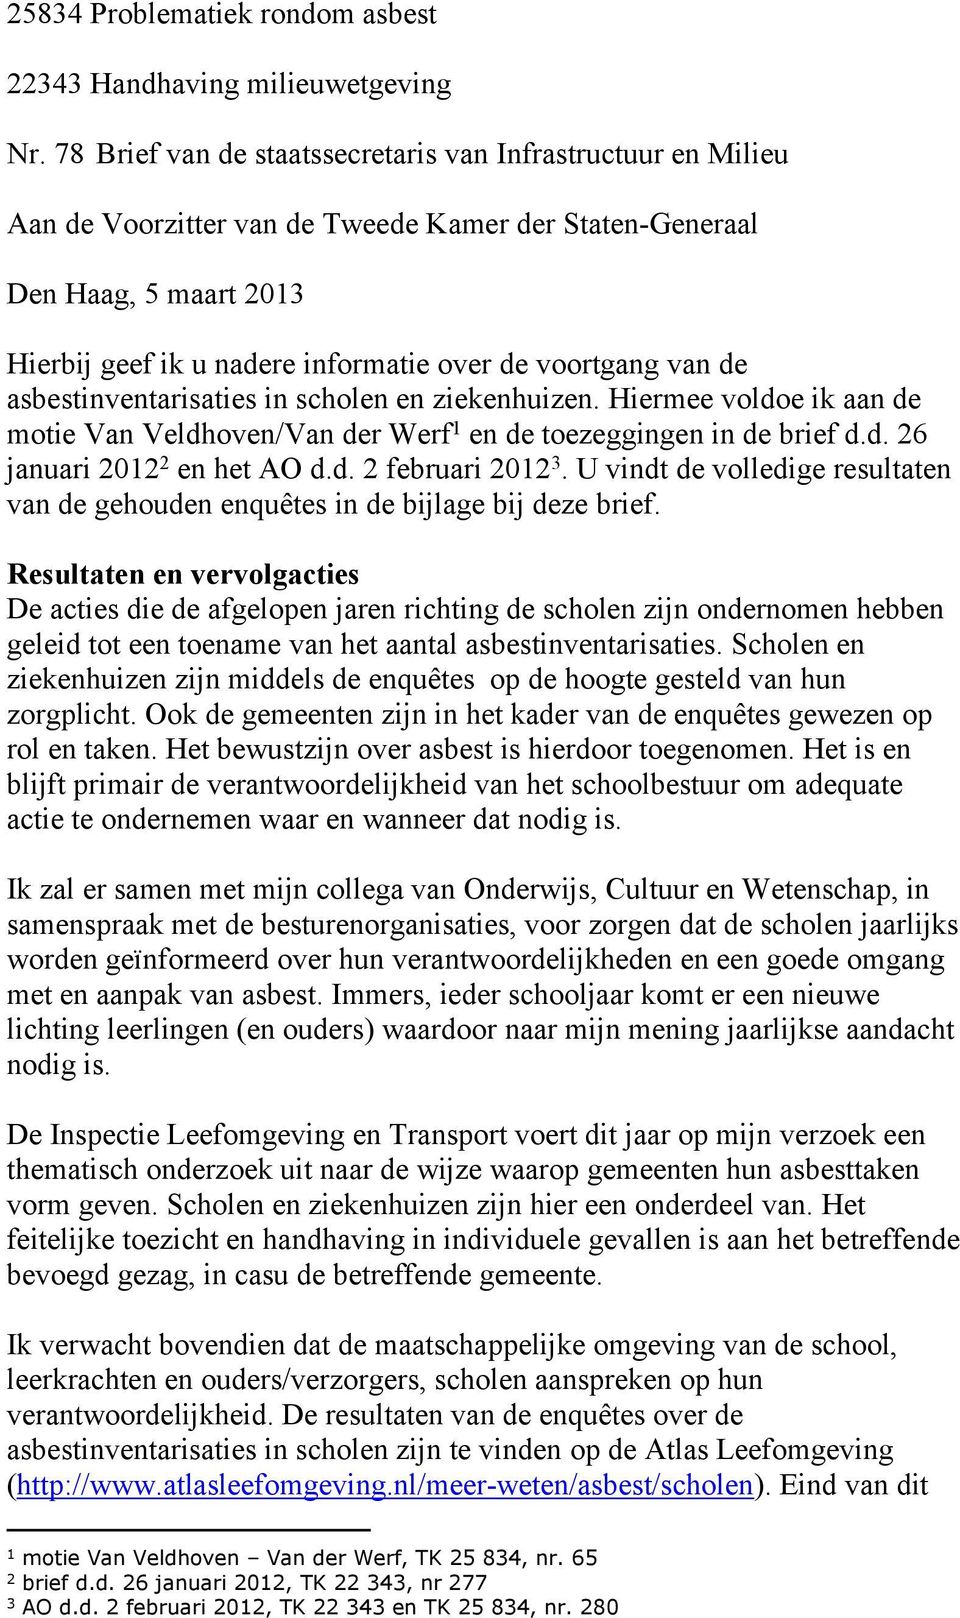 van de asbestinventarisaties in scholen en ziekenhuizen. Hiermee voldoe ik aan de motie Van Veldhoven/Van der Werf 1 en de toezeggingen in de brief d.d. 26 januari 2012 2 en het AO d.d. 2 februari 2012 3.